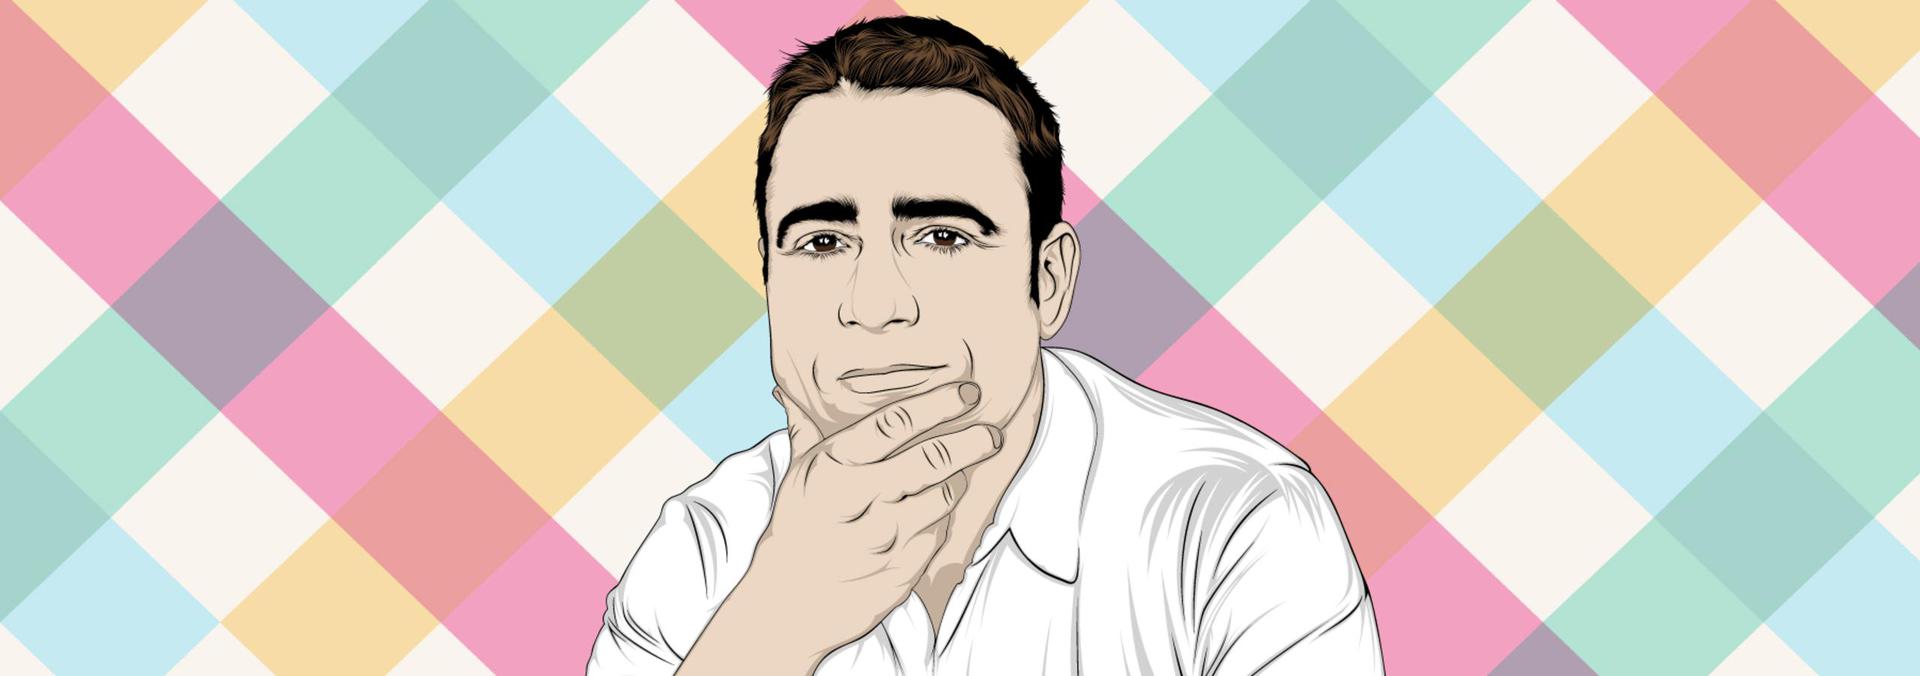 С нуля до миллиарда: Создатель Slack делится историей успеха - 5